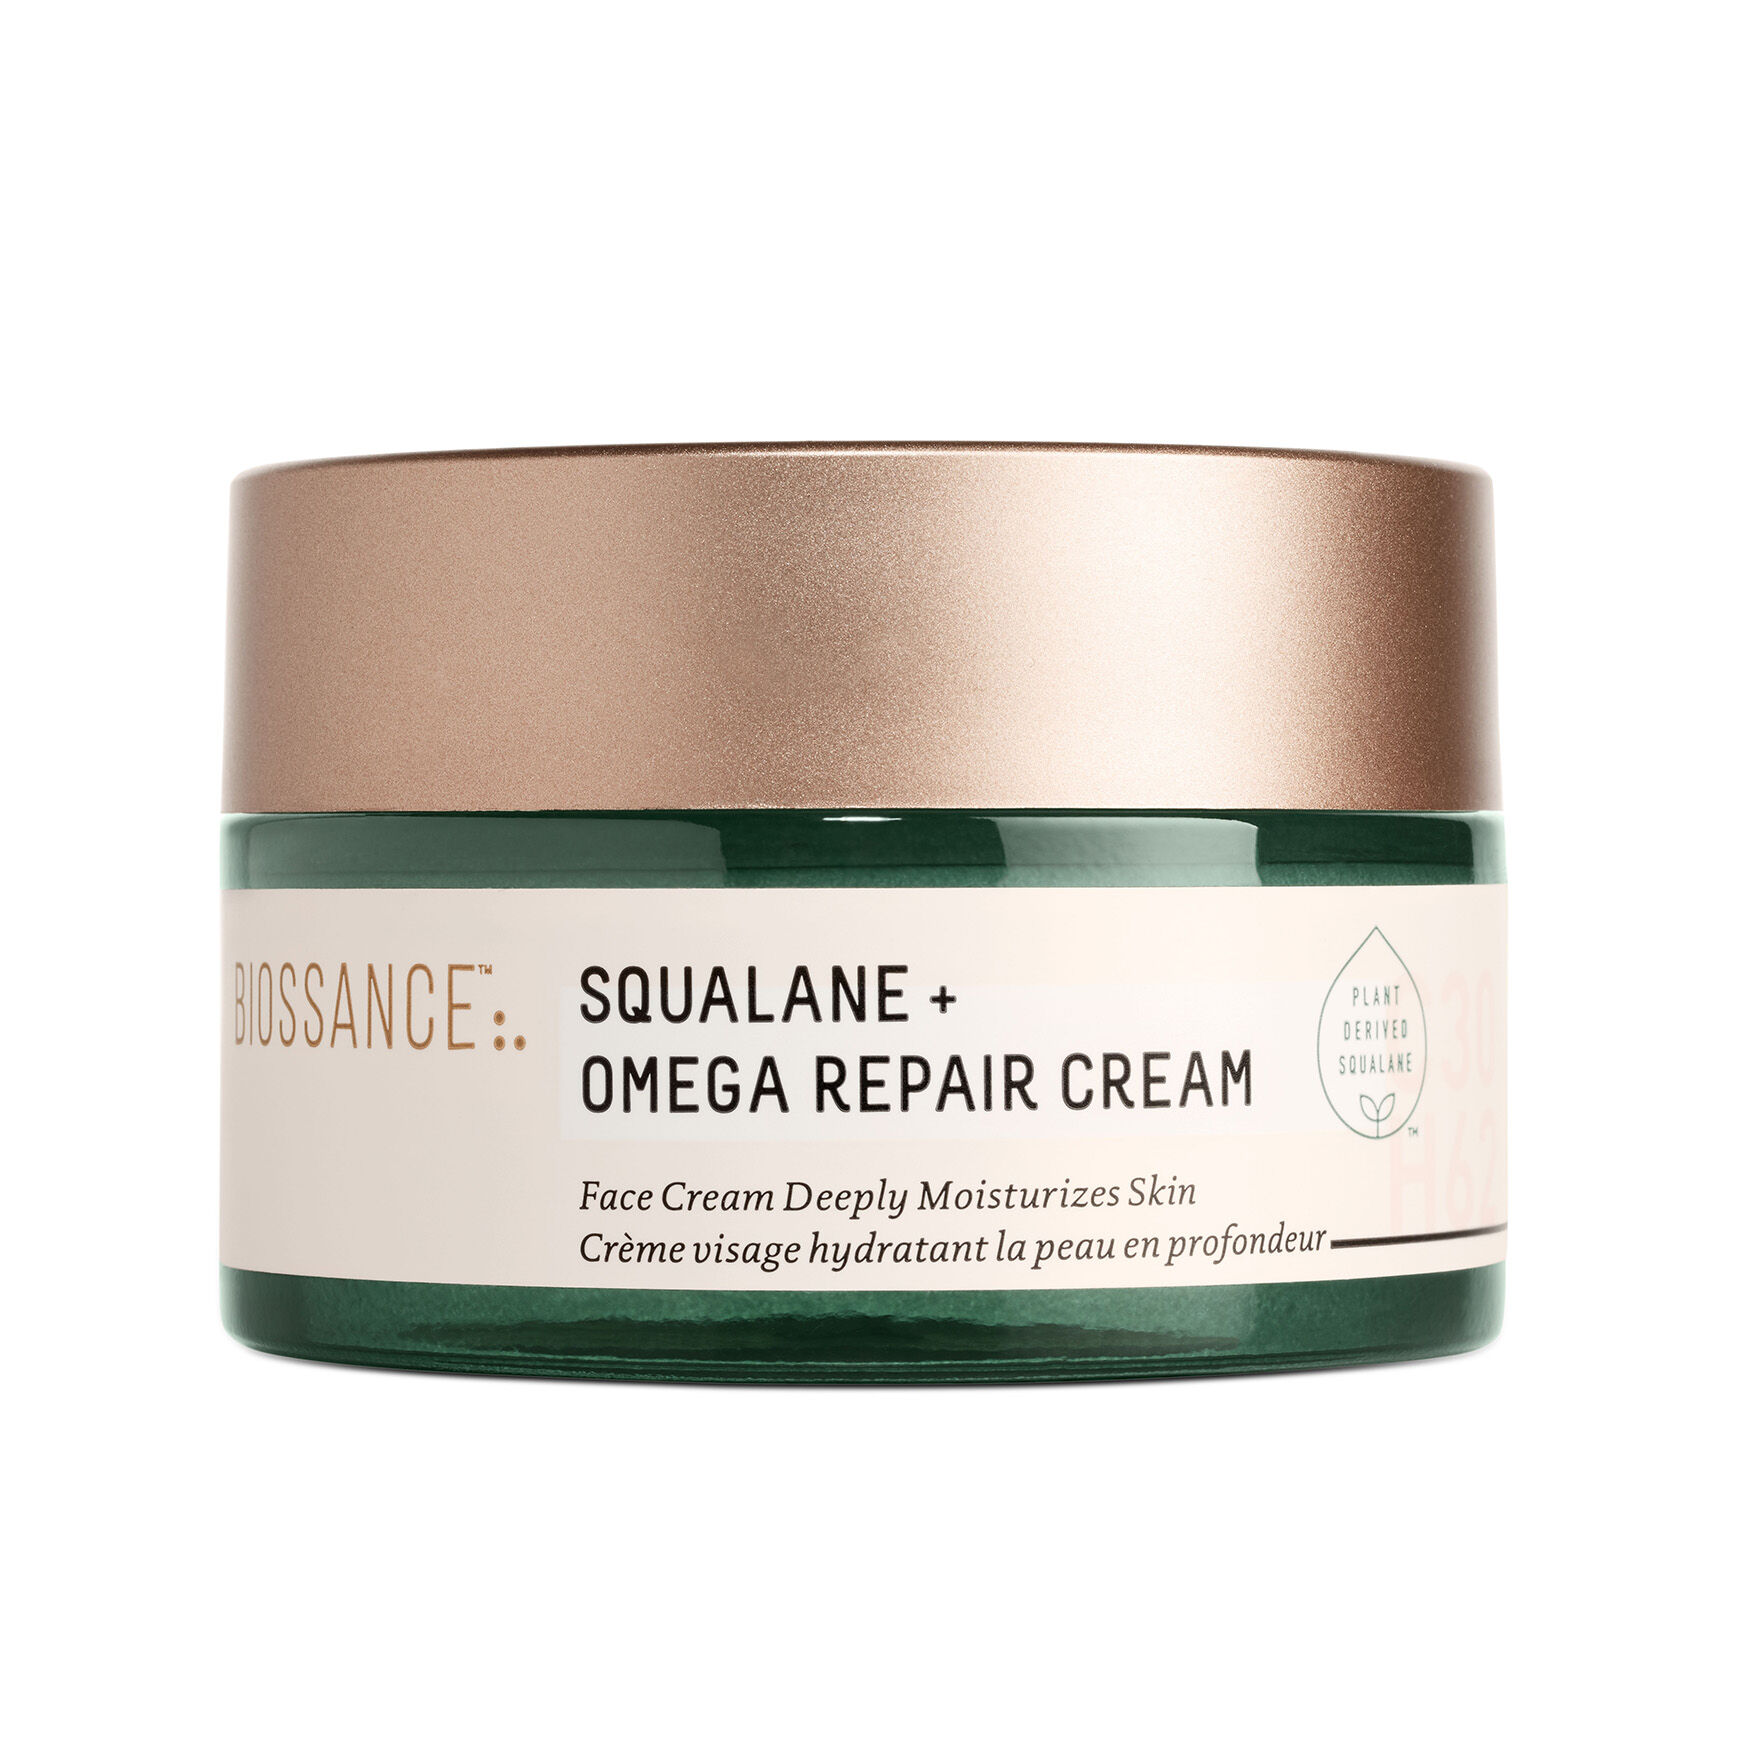 Biossance - Squalane + Omega Repair Cream